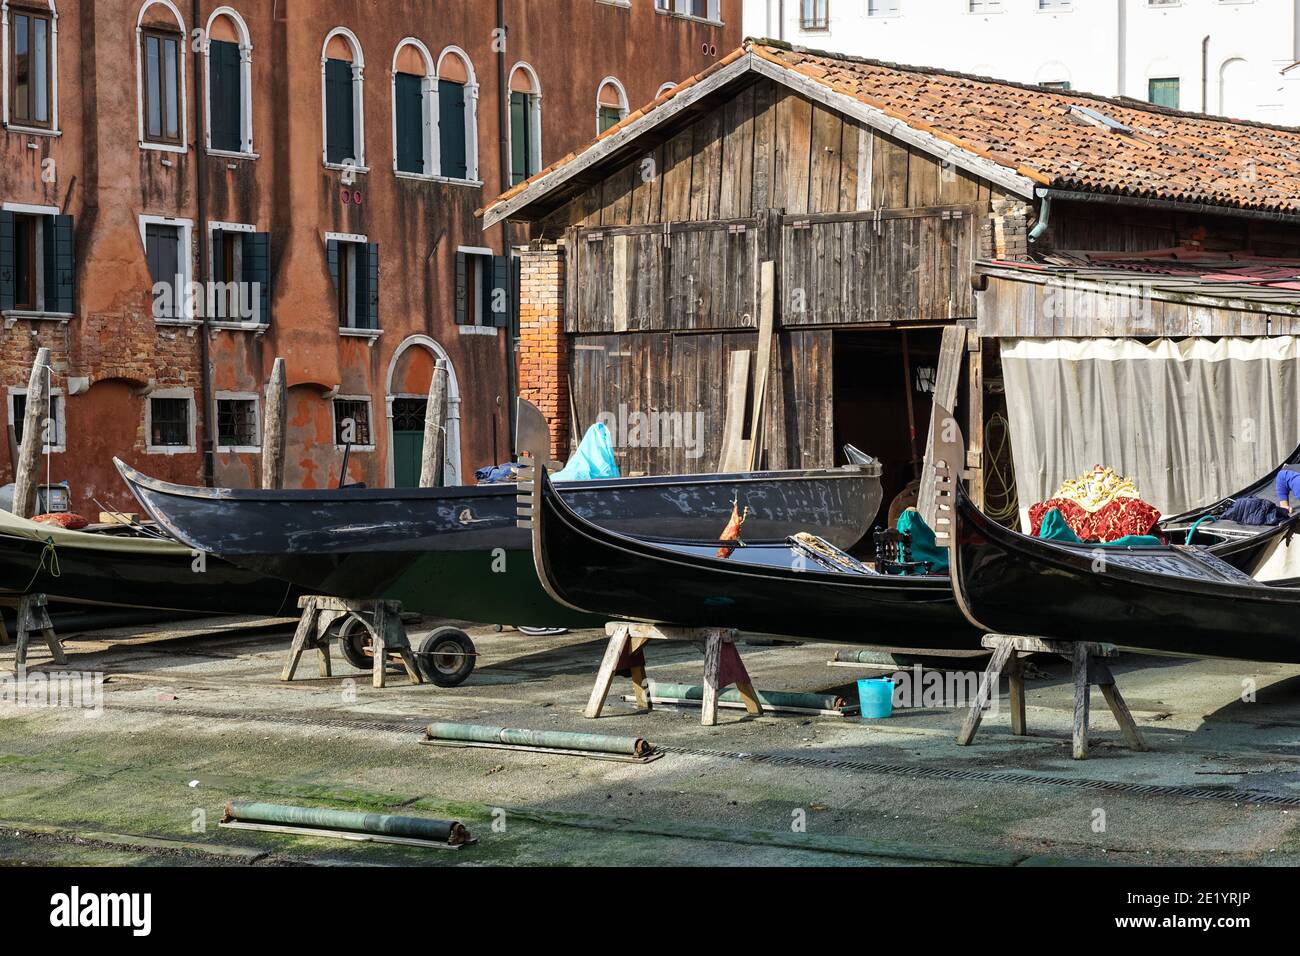 Squero di San Trovaso tradizionale cantiere per la produzione di gondole nel sestiere di Dorsoduro, Venezia, Italia Foto Stock